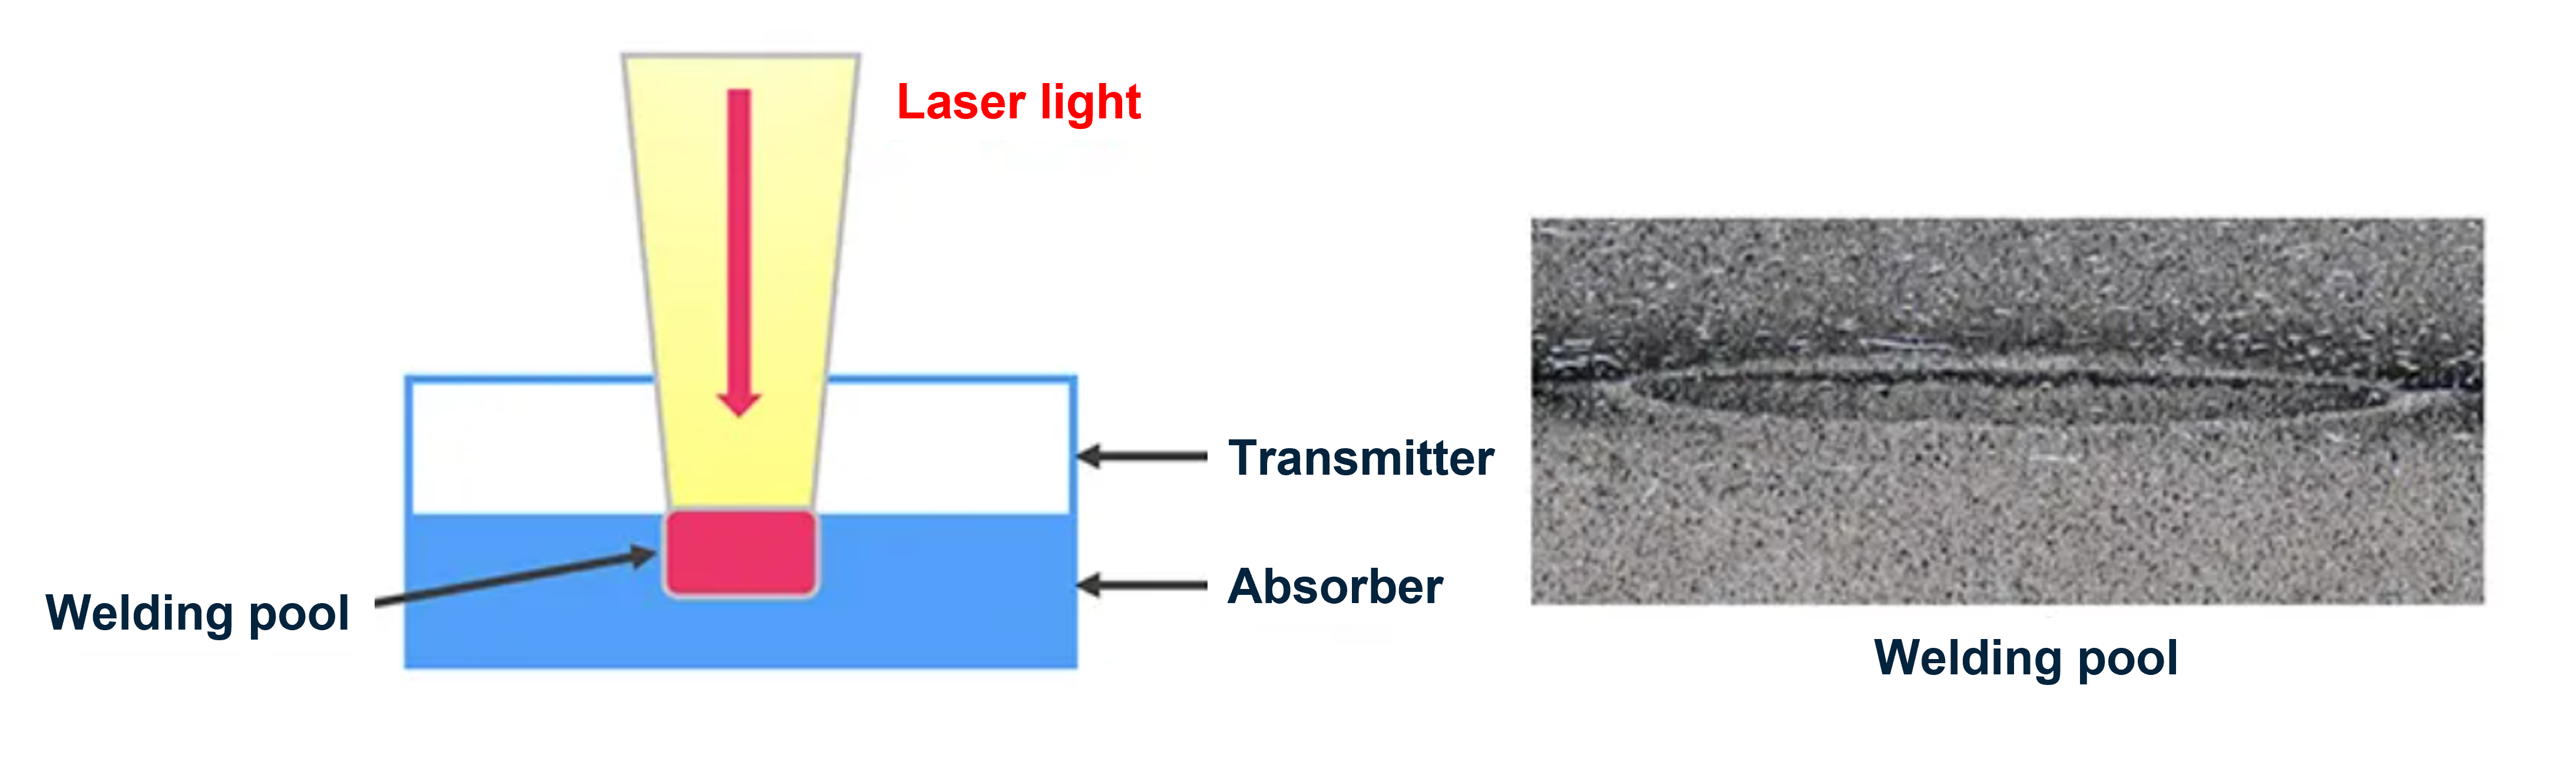 Typical setup for laser welding